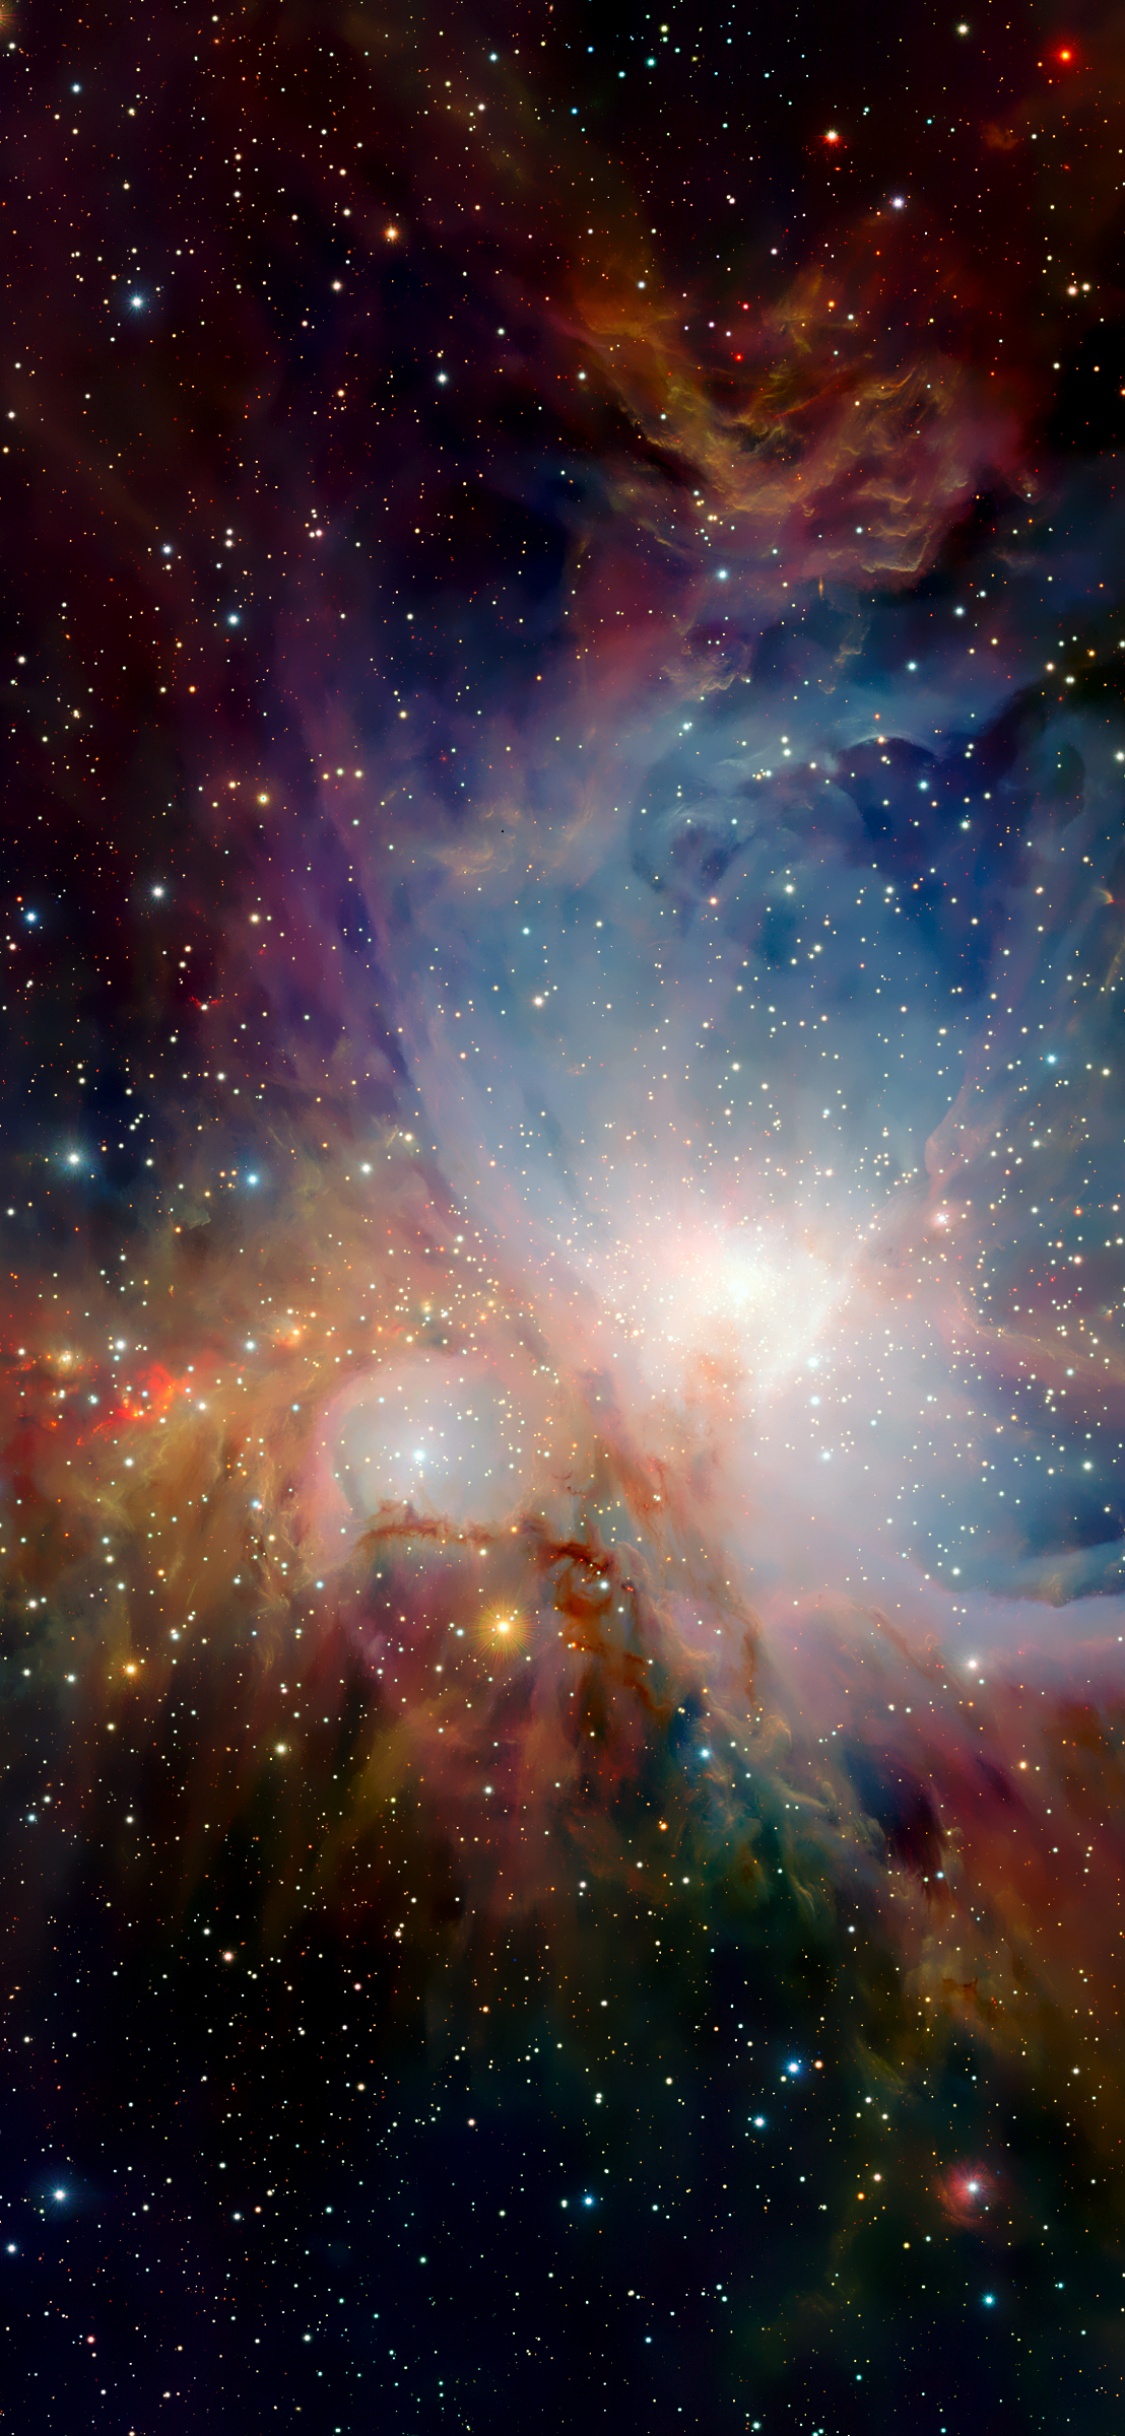 Orion Nebula 4K Wallpaper, Infrared vision, Scientific Observation